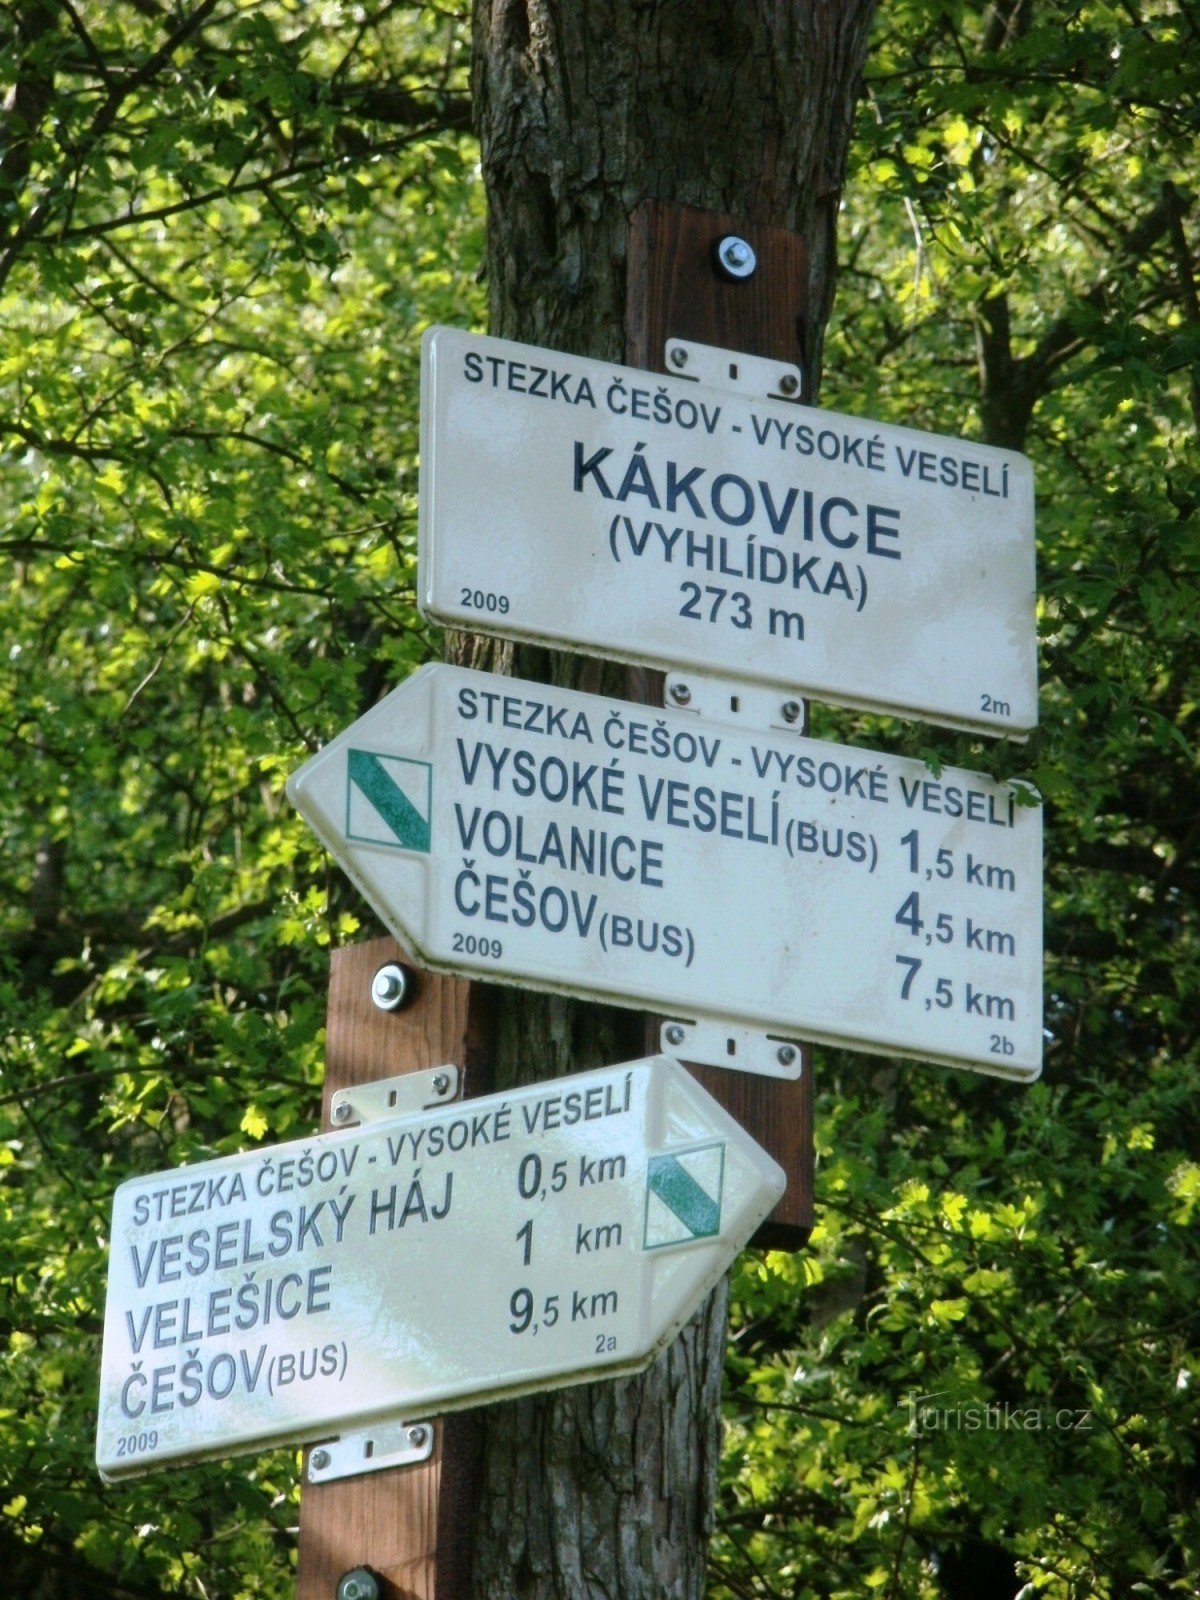 križišče NS Češov-Vysoké Veselí - Kákovice